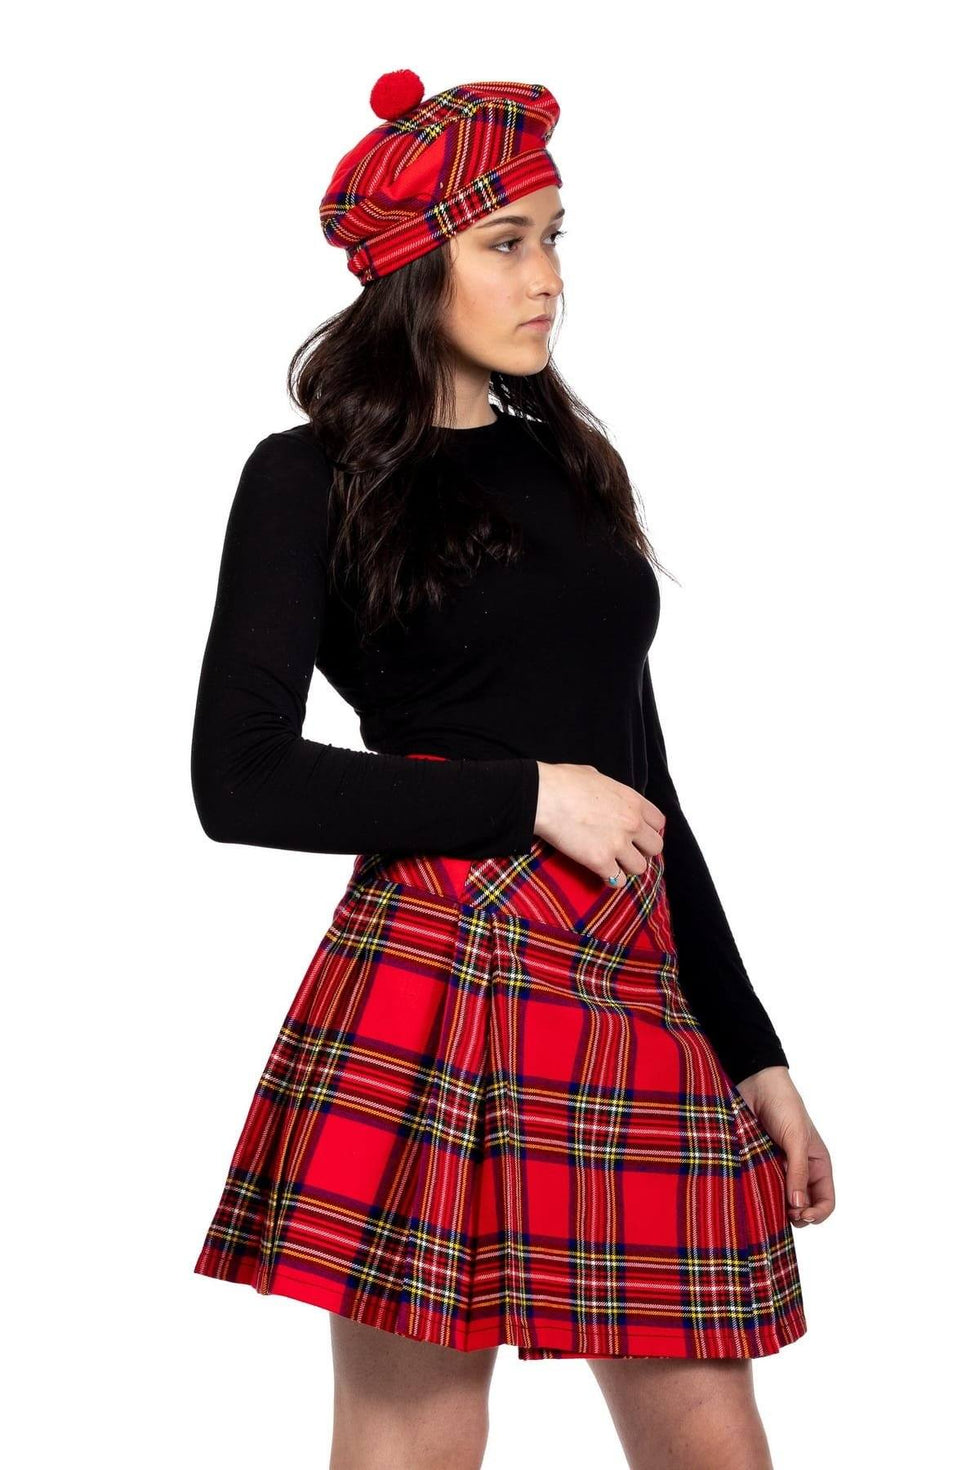 Classic Ladies Kilt | Scottish Kilt™